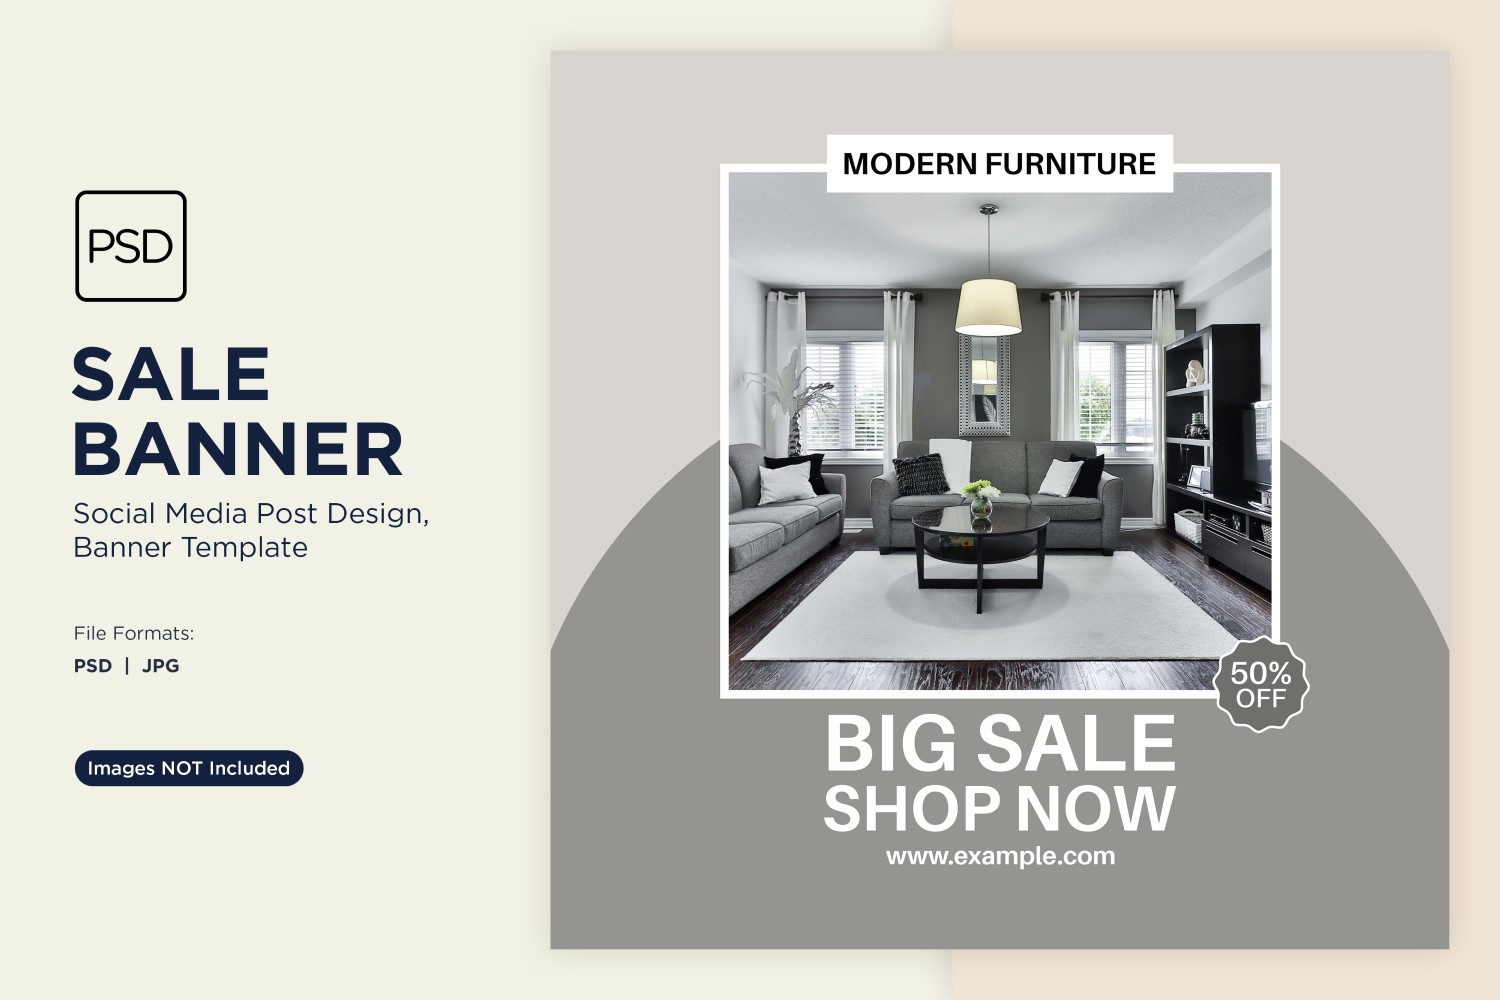 Big Sale on Modern Furniture Banner Design Template